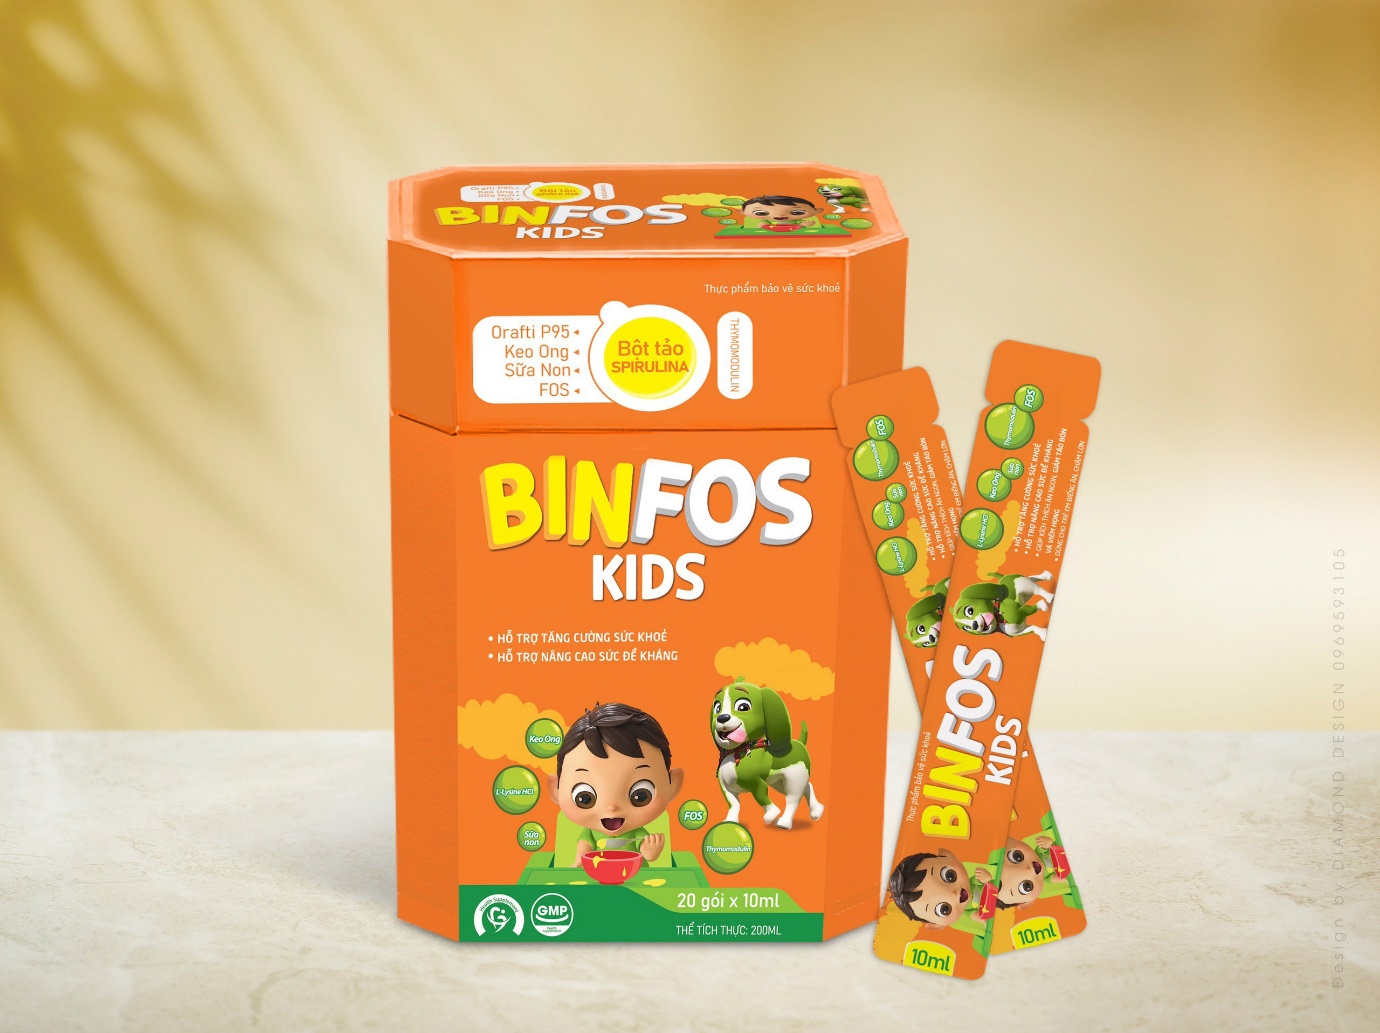 Binfos Kids - Tăng cường sức khỏe, nâng cao sức đề kháng cho trẻ - Ảnh 1.